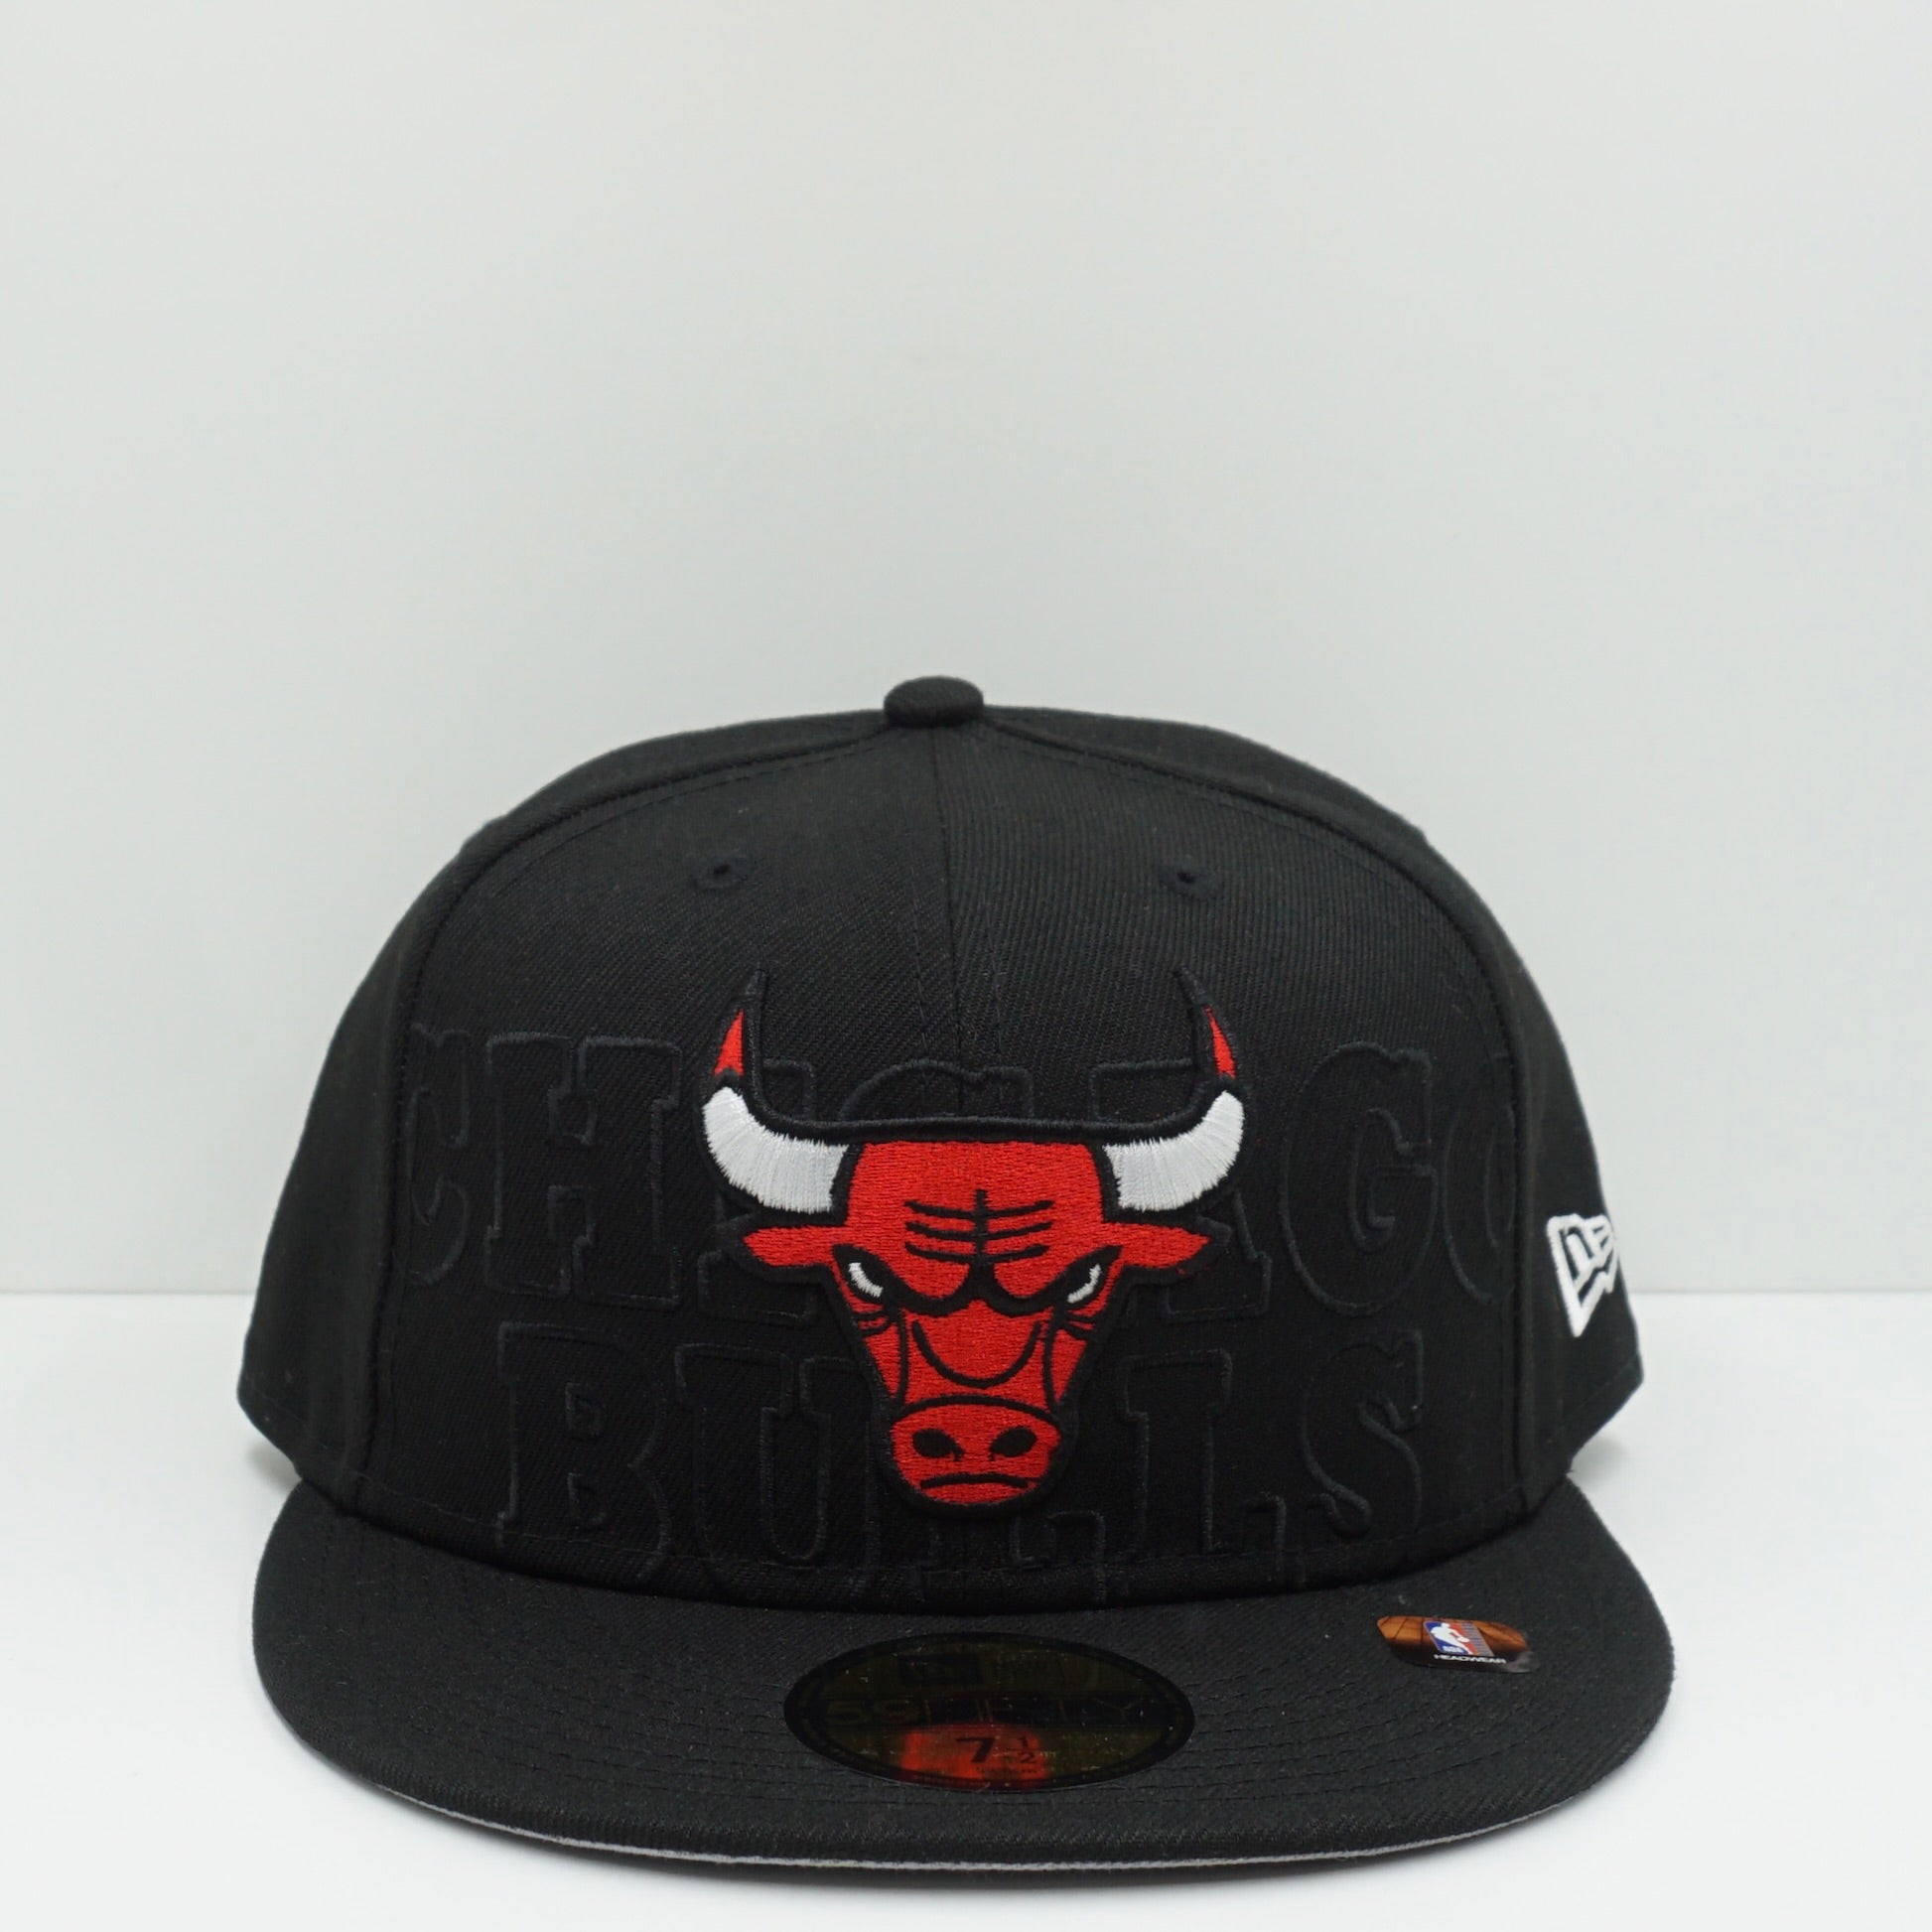 New Era Chicago Bulls Black Fitted Cap